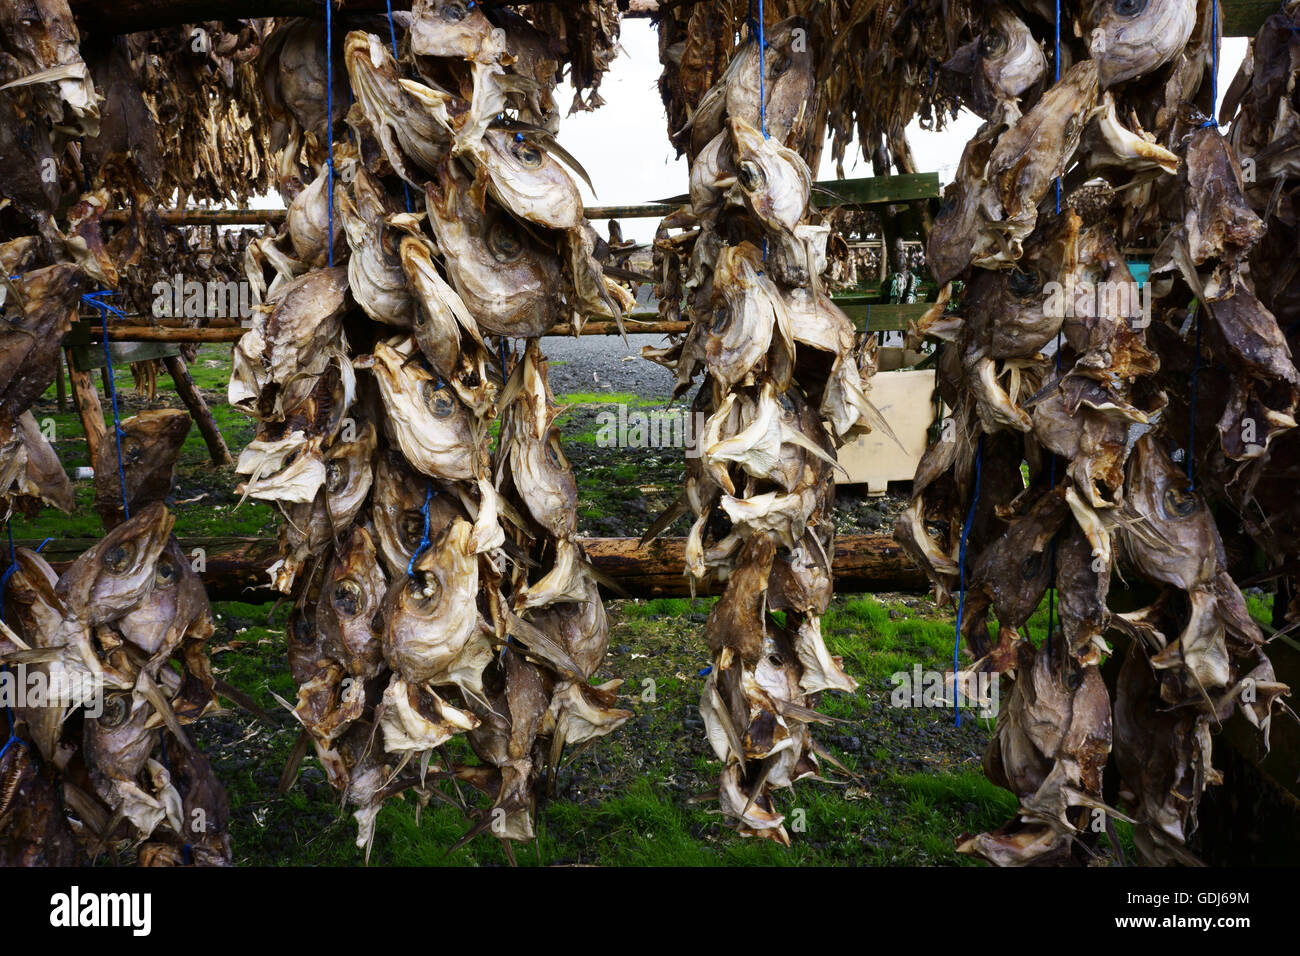 Stockfish, poisson séché, surtout les chefs, suspendu sur des supports à l'est de Réthymnon, le long de la route1, Islande Banque D'Images